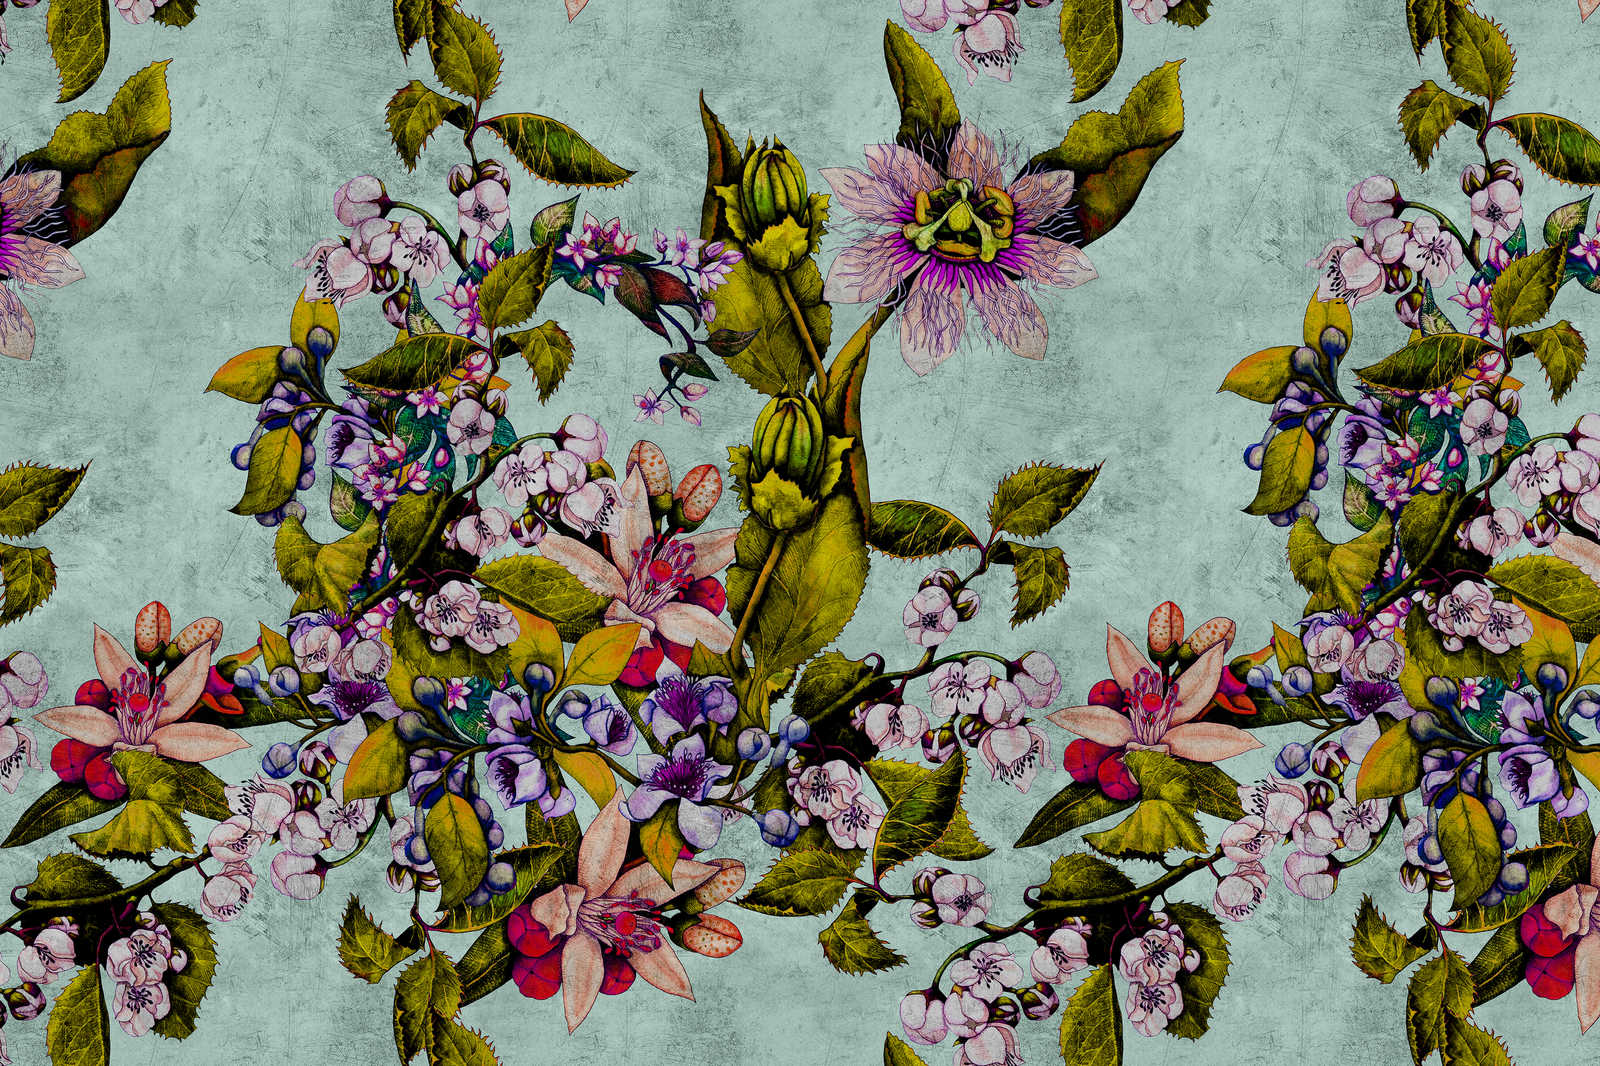             Tropical Passion 2 - Leinwandbild mit Blüten und Knospen – 0,90 m x 0,60 m
        